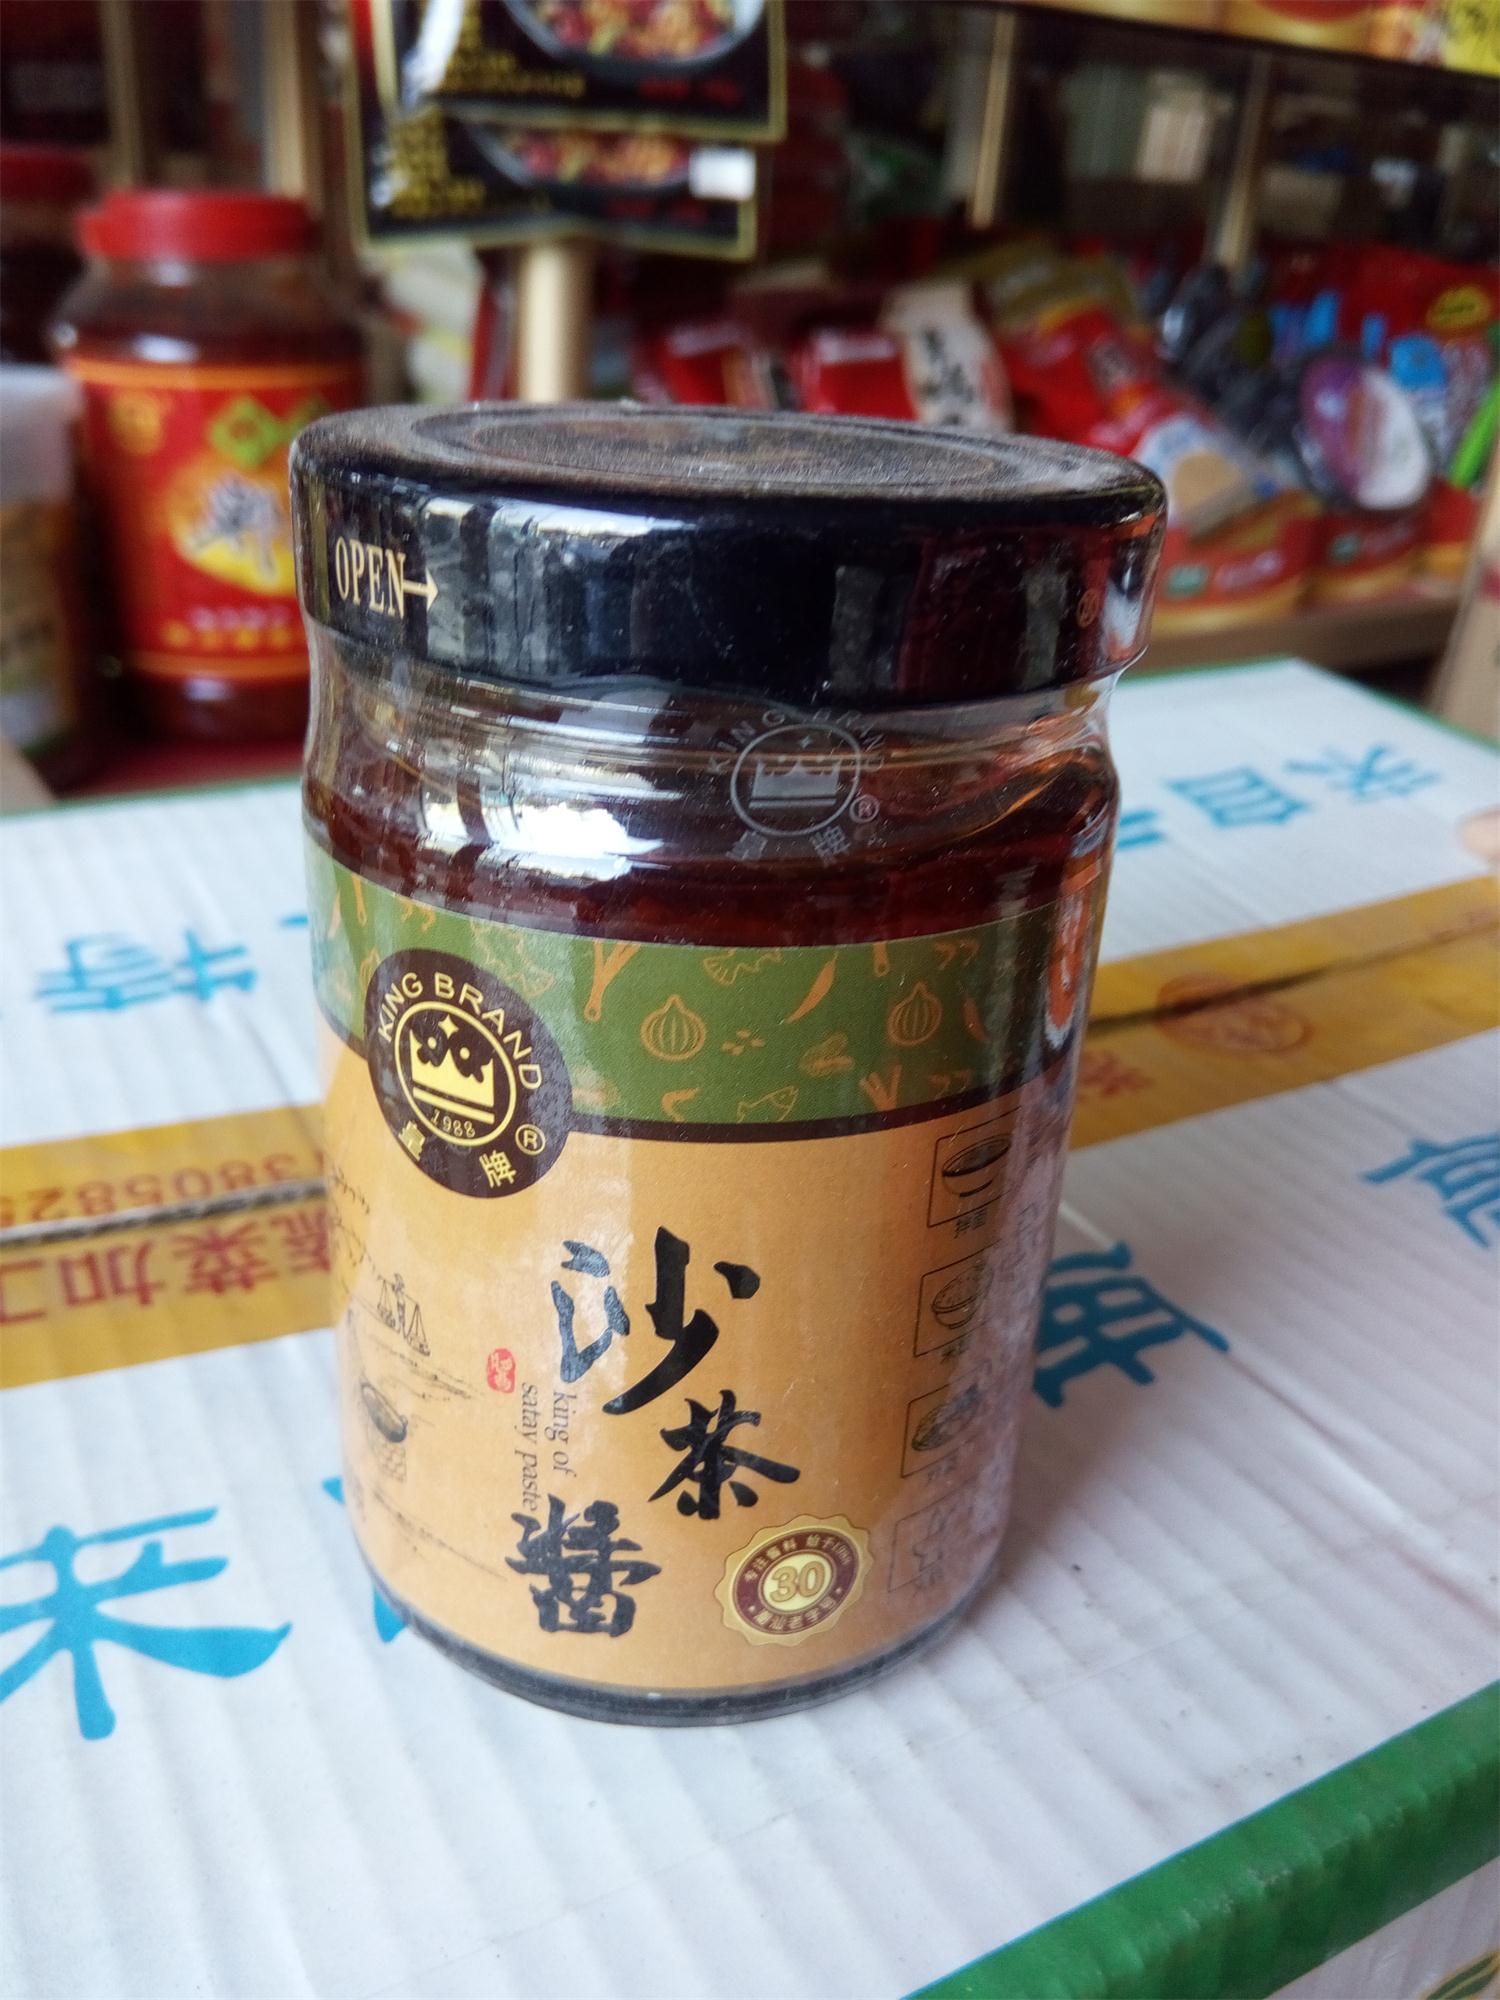 中国名牌 皇牌沙茶酱 原味200g 调料 火锅蘸酱沙爹酱 批发特价